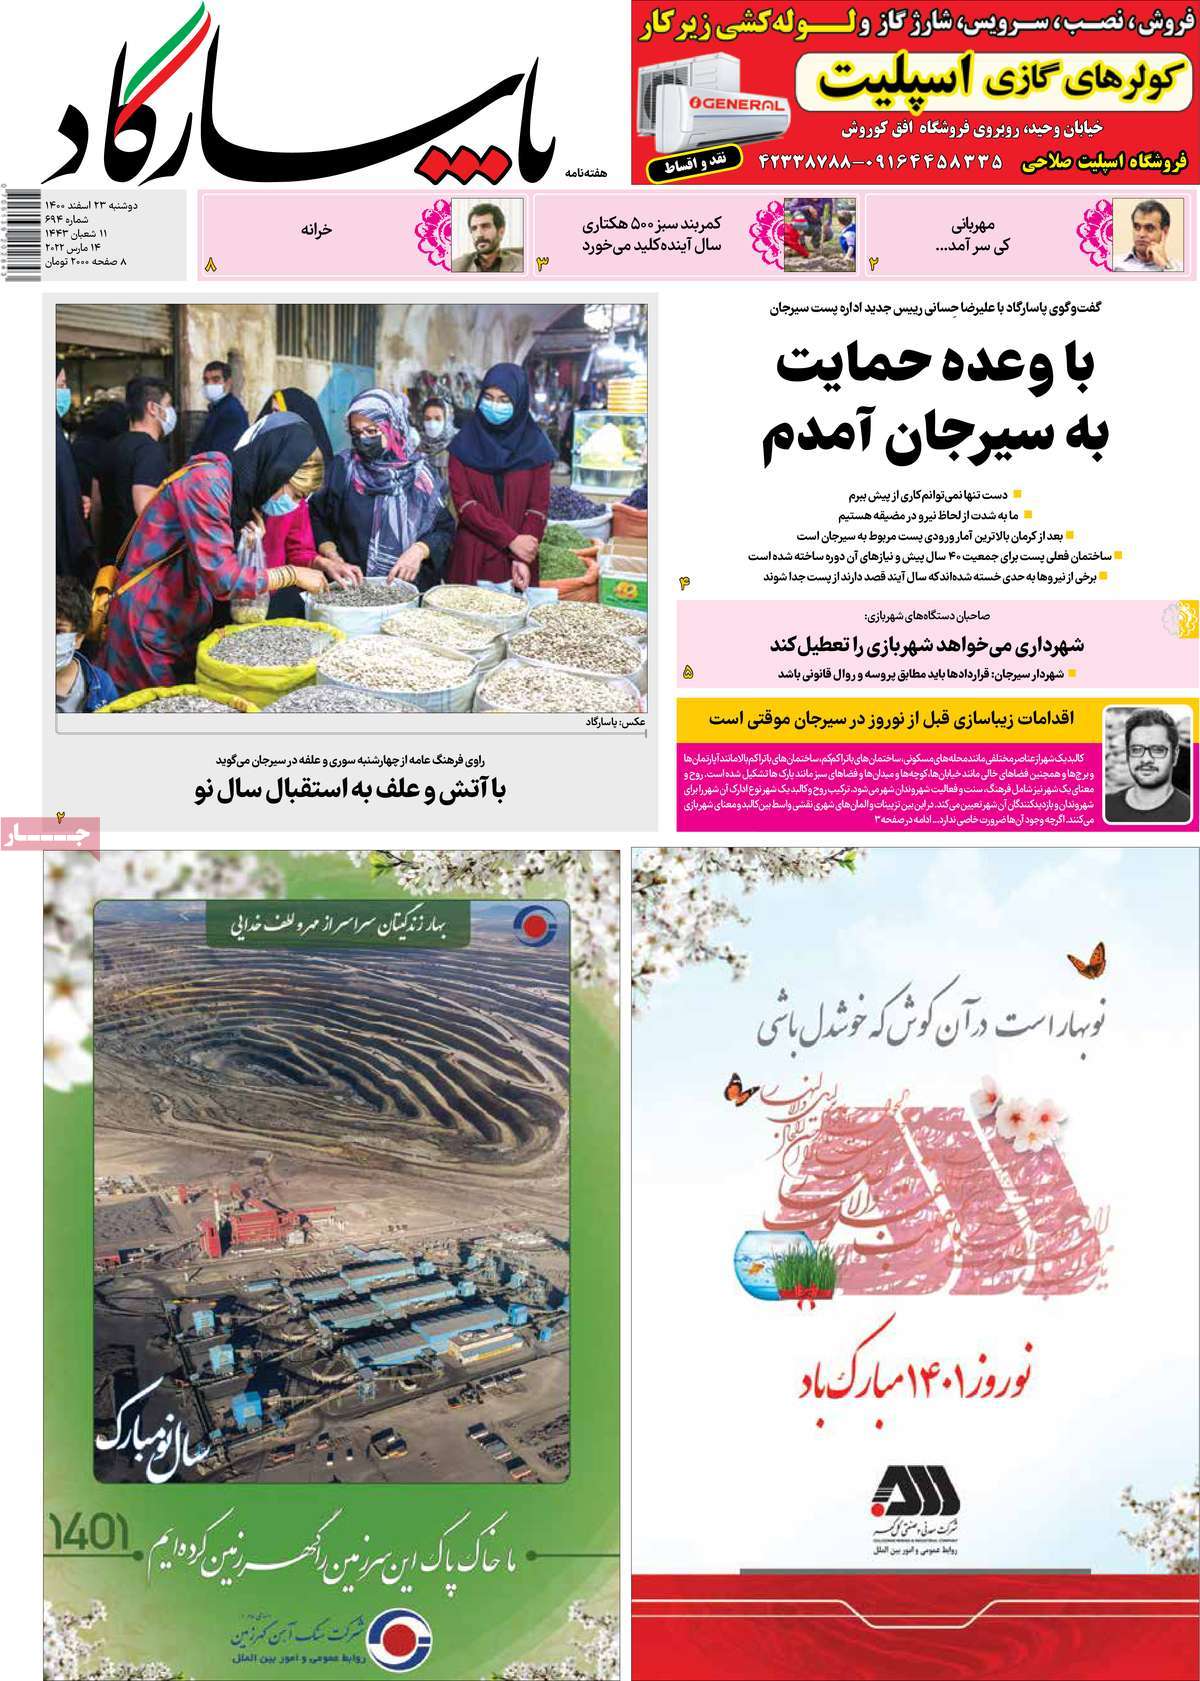 صفحه نخست مجله پاسارگاد - دوشنبه, ۲۳ اسفند ۱۴۰۰